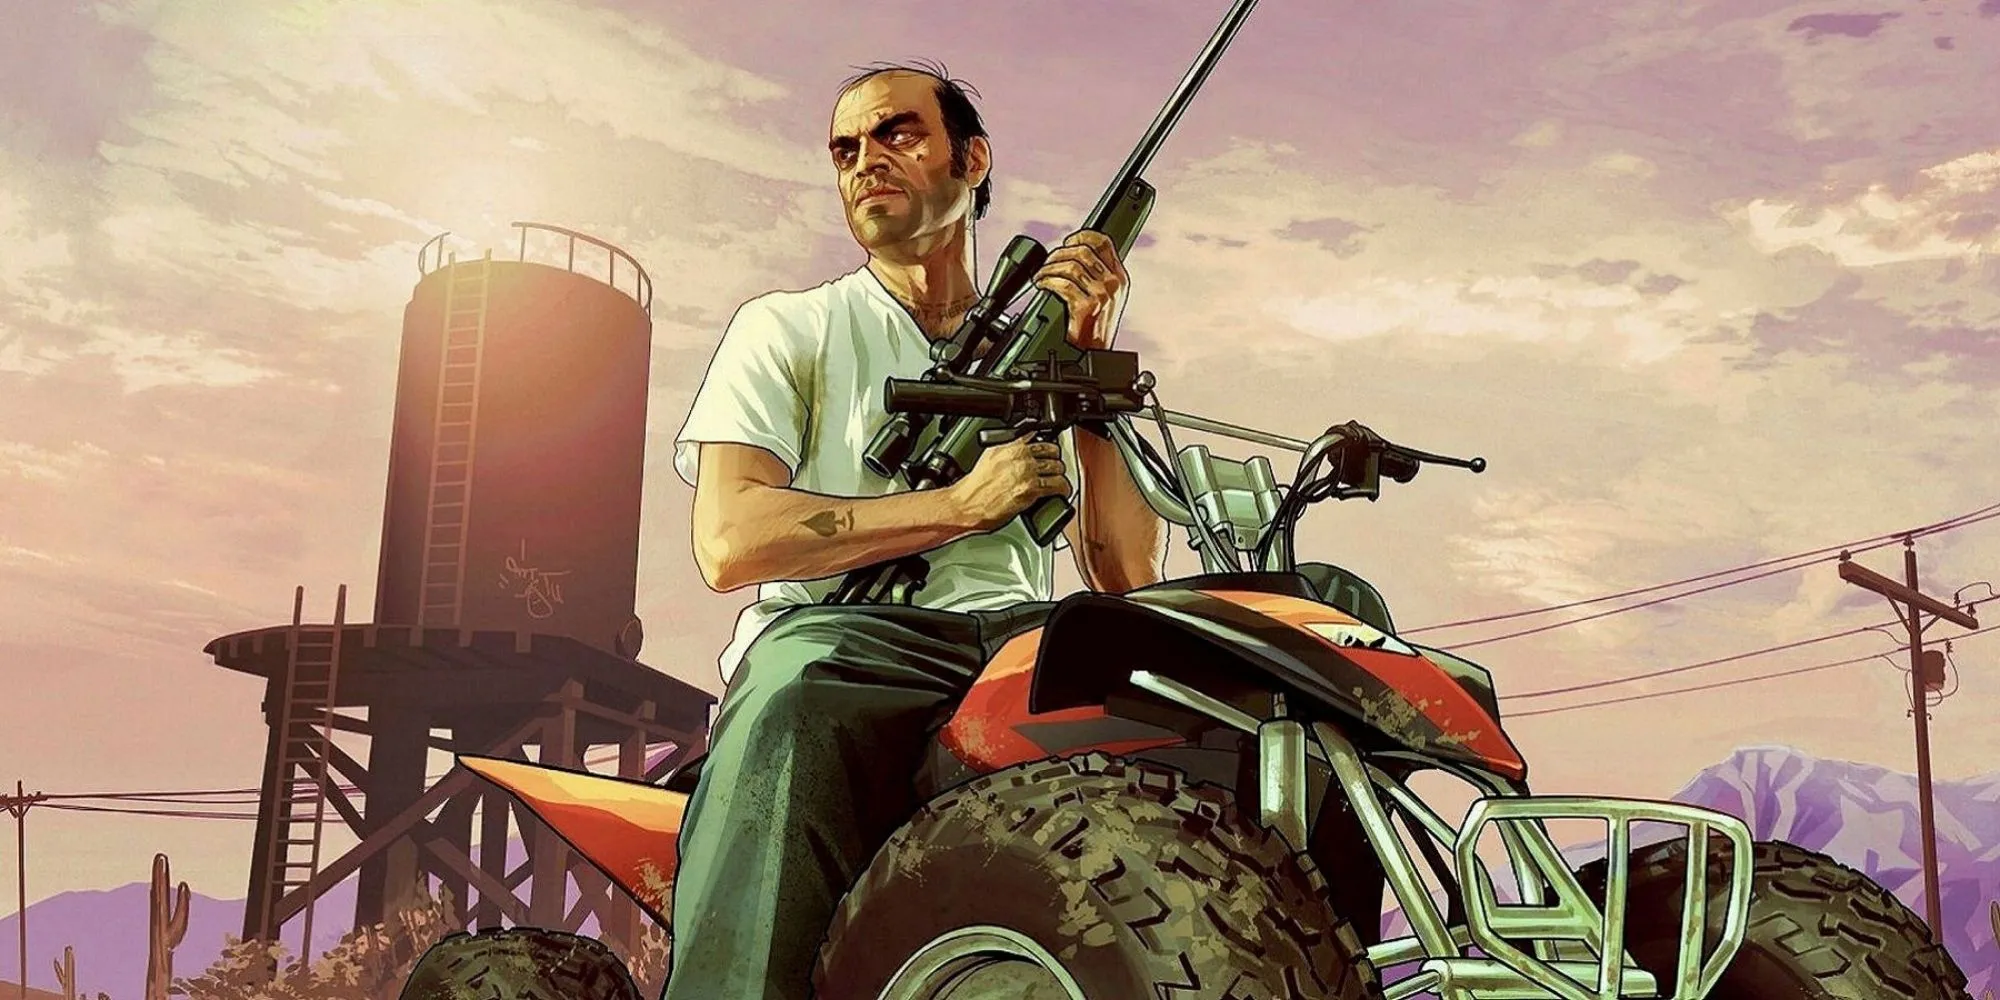 Grand Theft Auto 5 - Trevor Philips